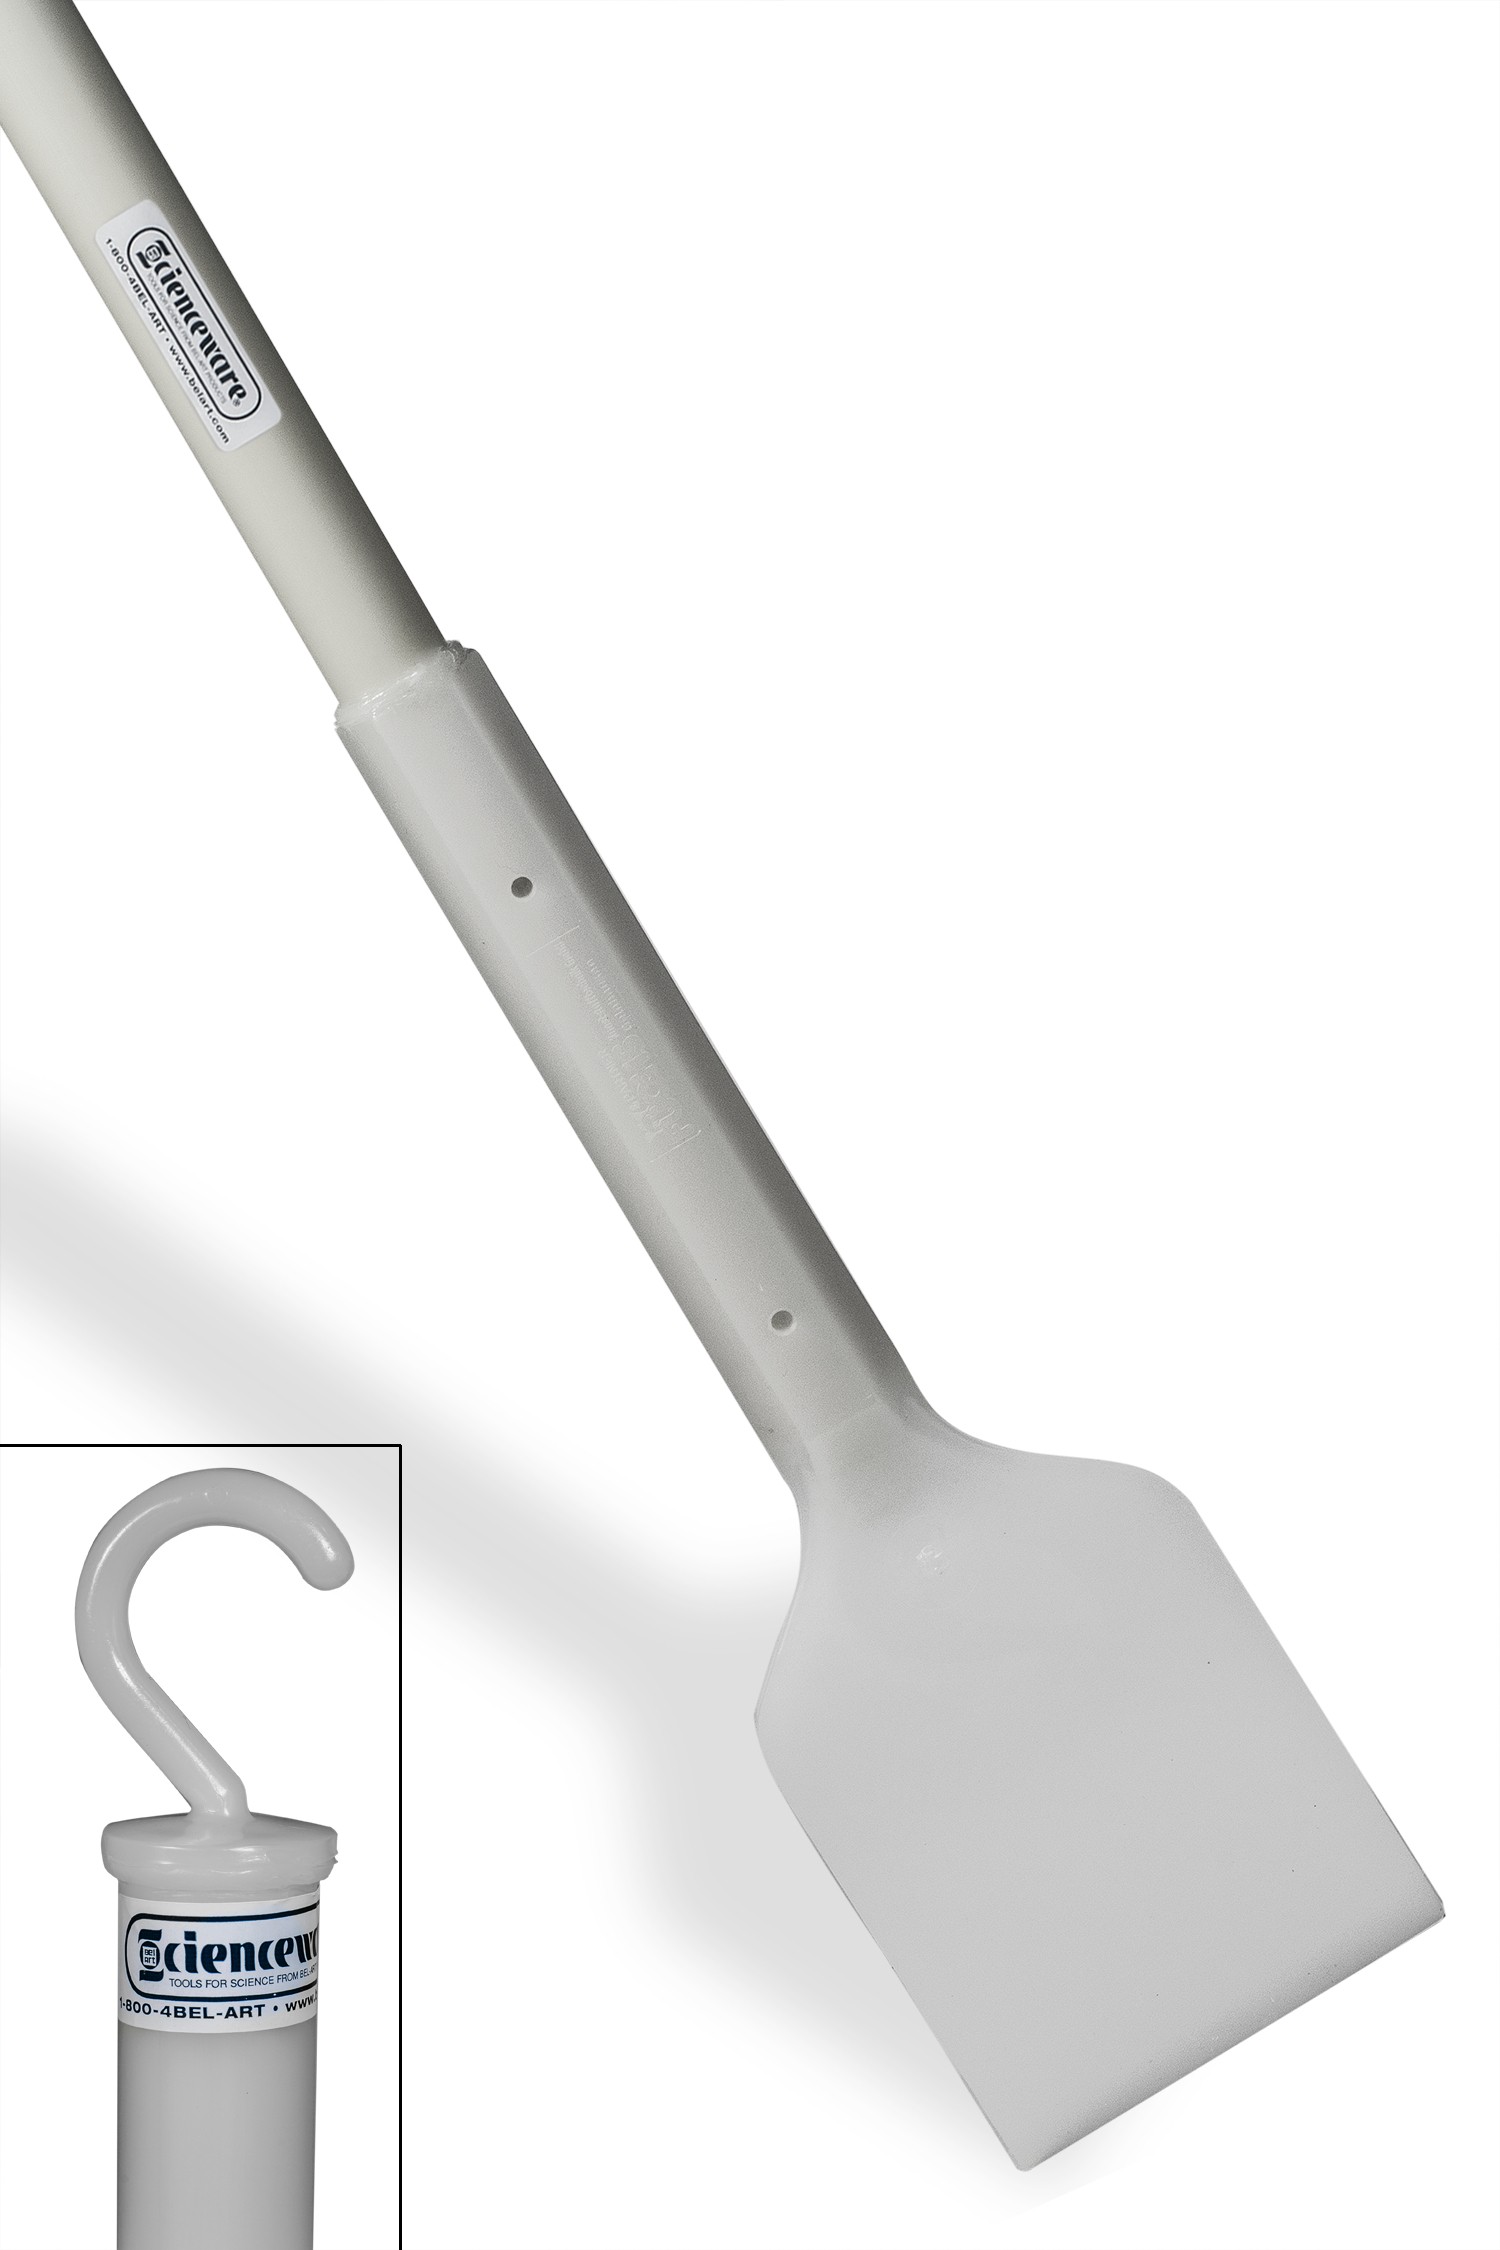 SP Bel-Art Soft Plastic Scraper; 72 in. Handle, 5 x 6 in. Blade, White